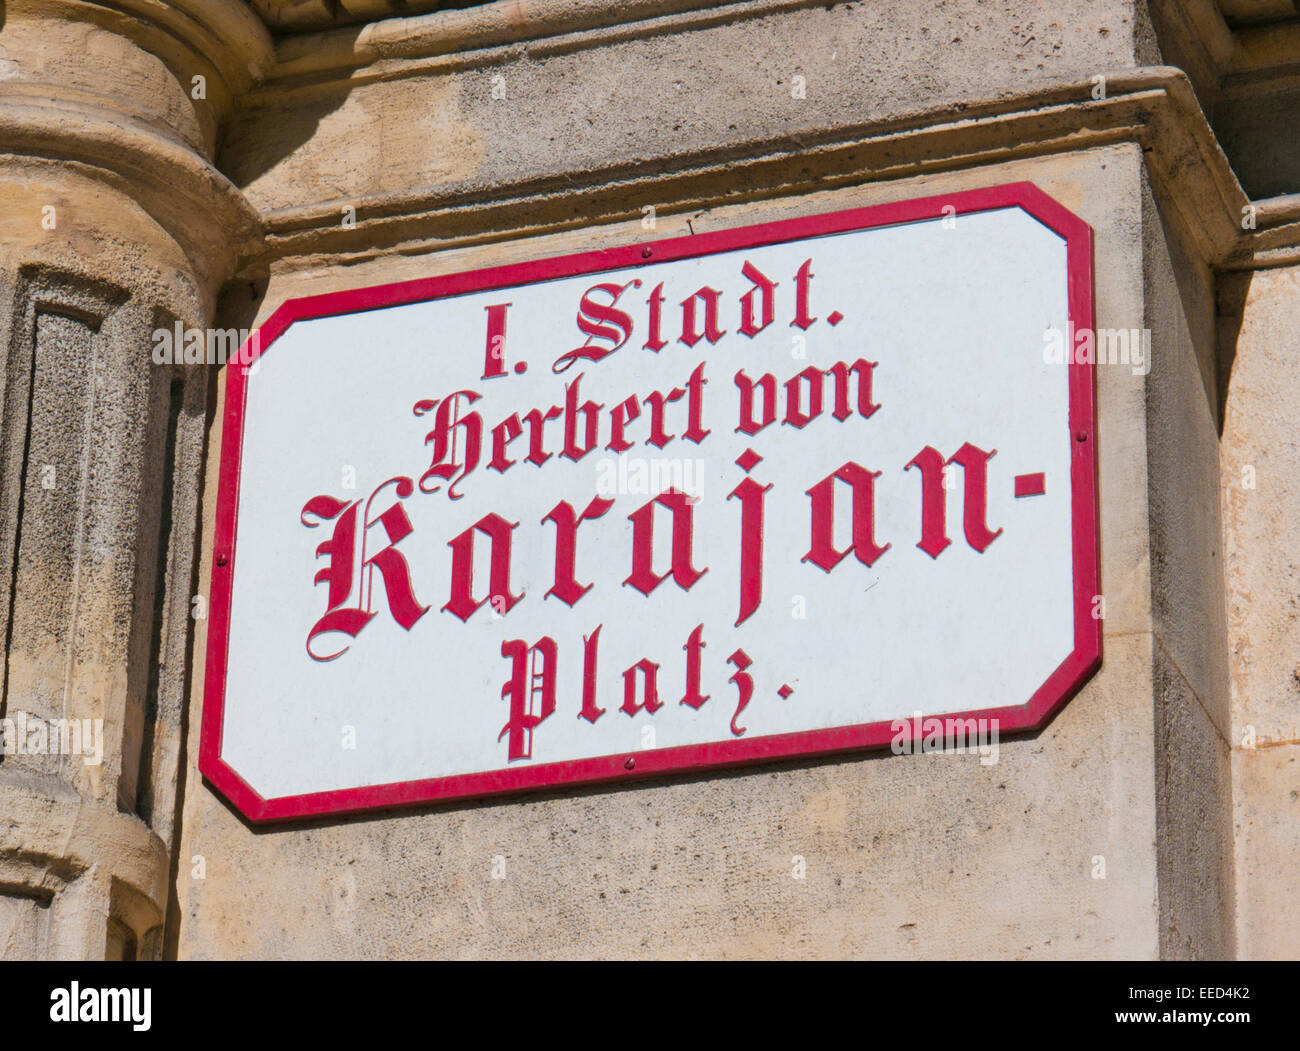 Herbert Von Karajan Platz accueil de l'Opéra de Vienne en Autriche Banque D'Images